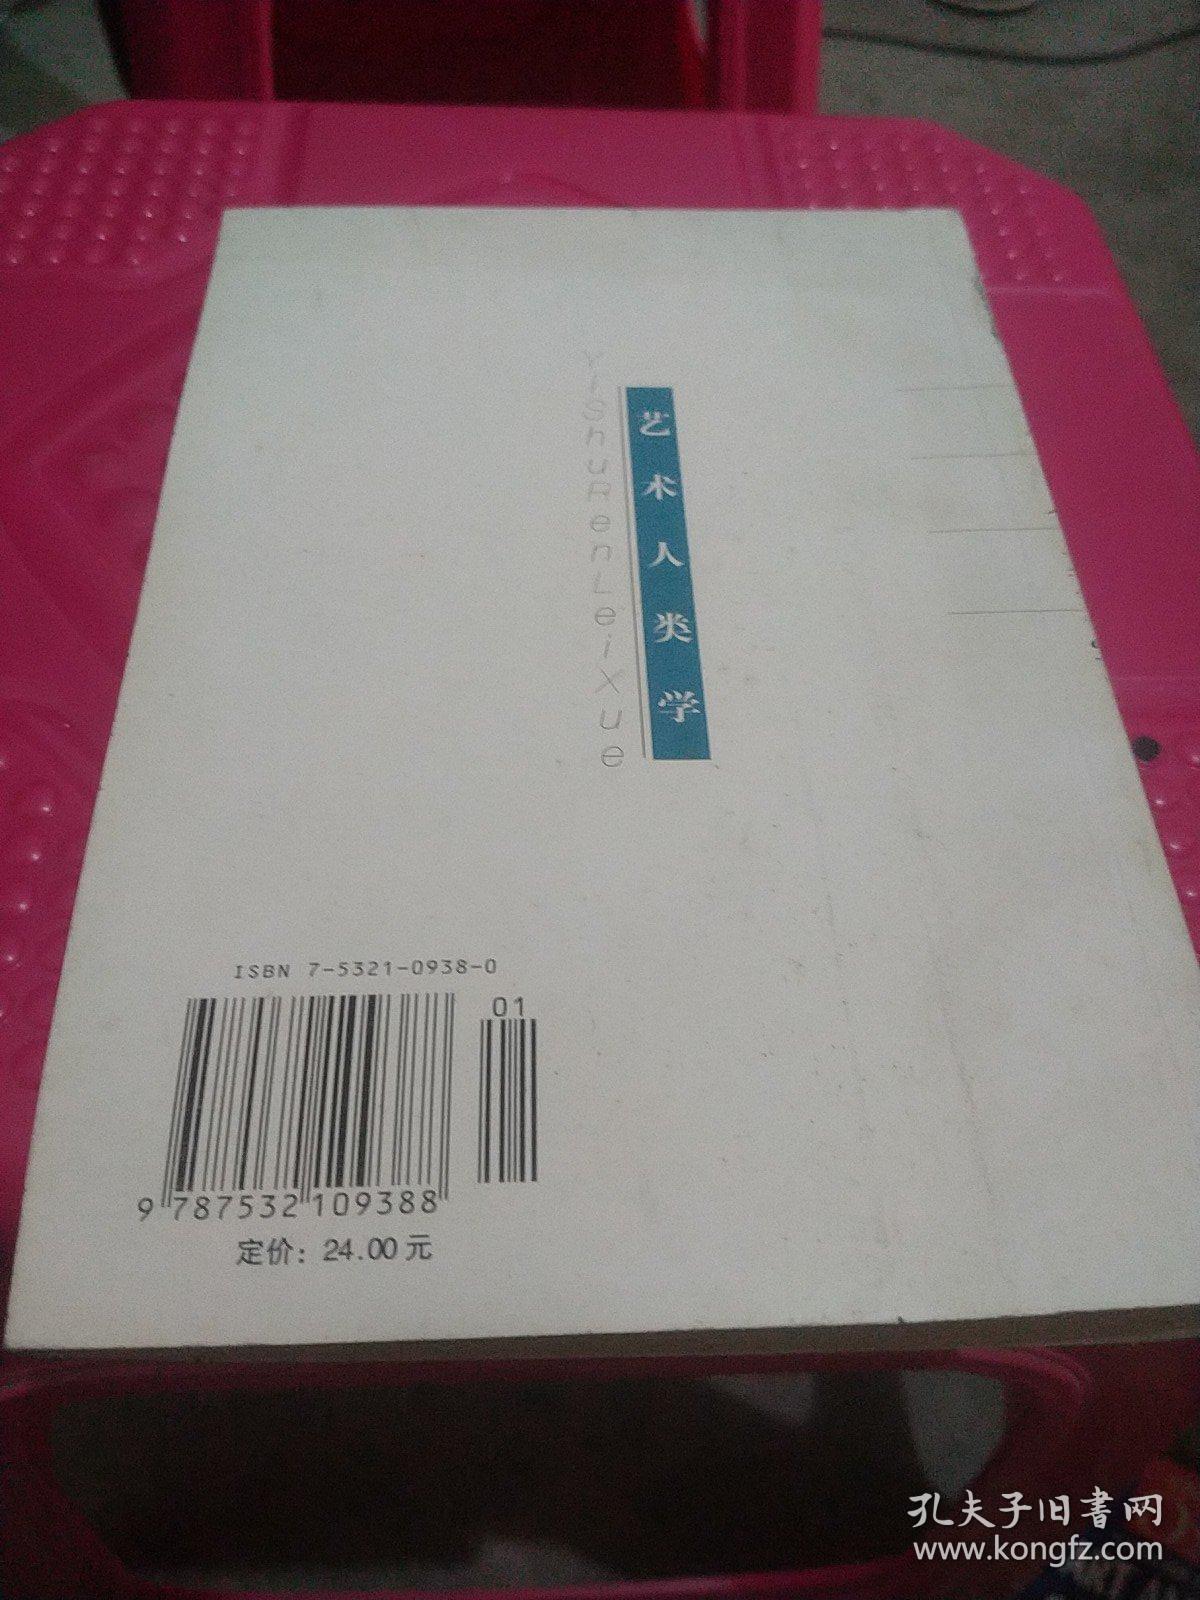 上海文艺学术文库: 艺术人类学（易中天 著）